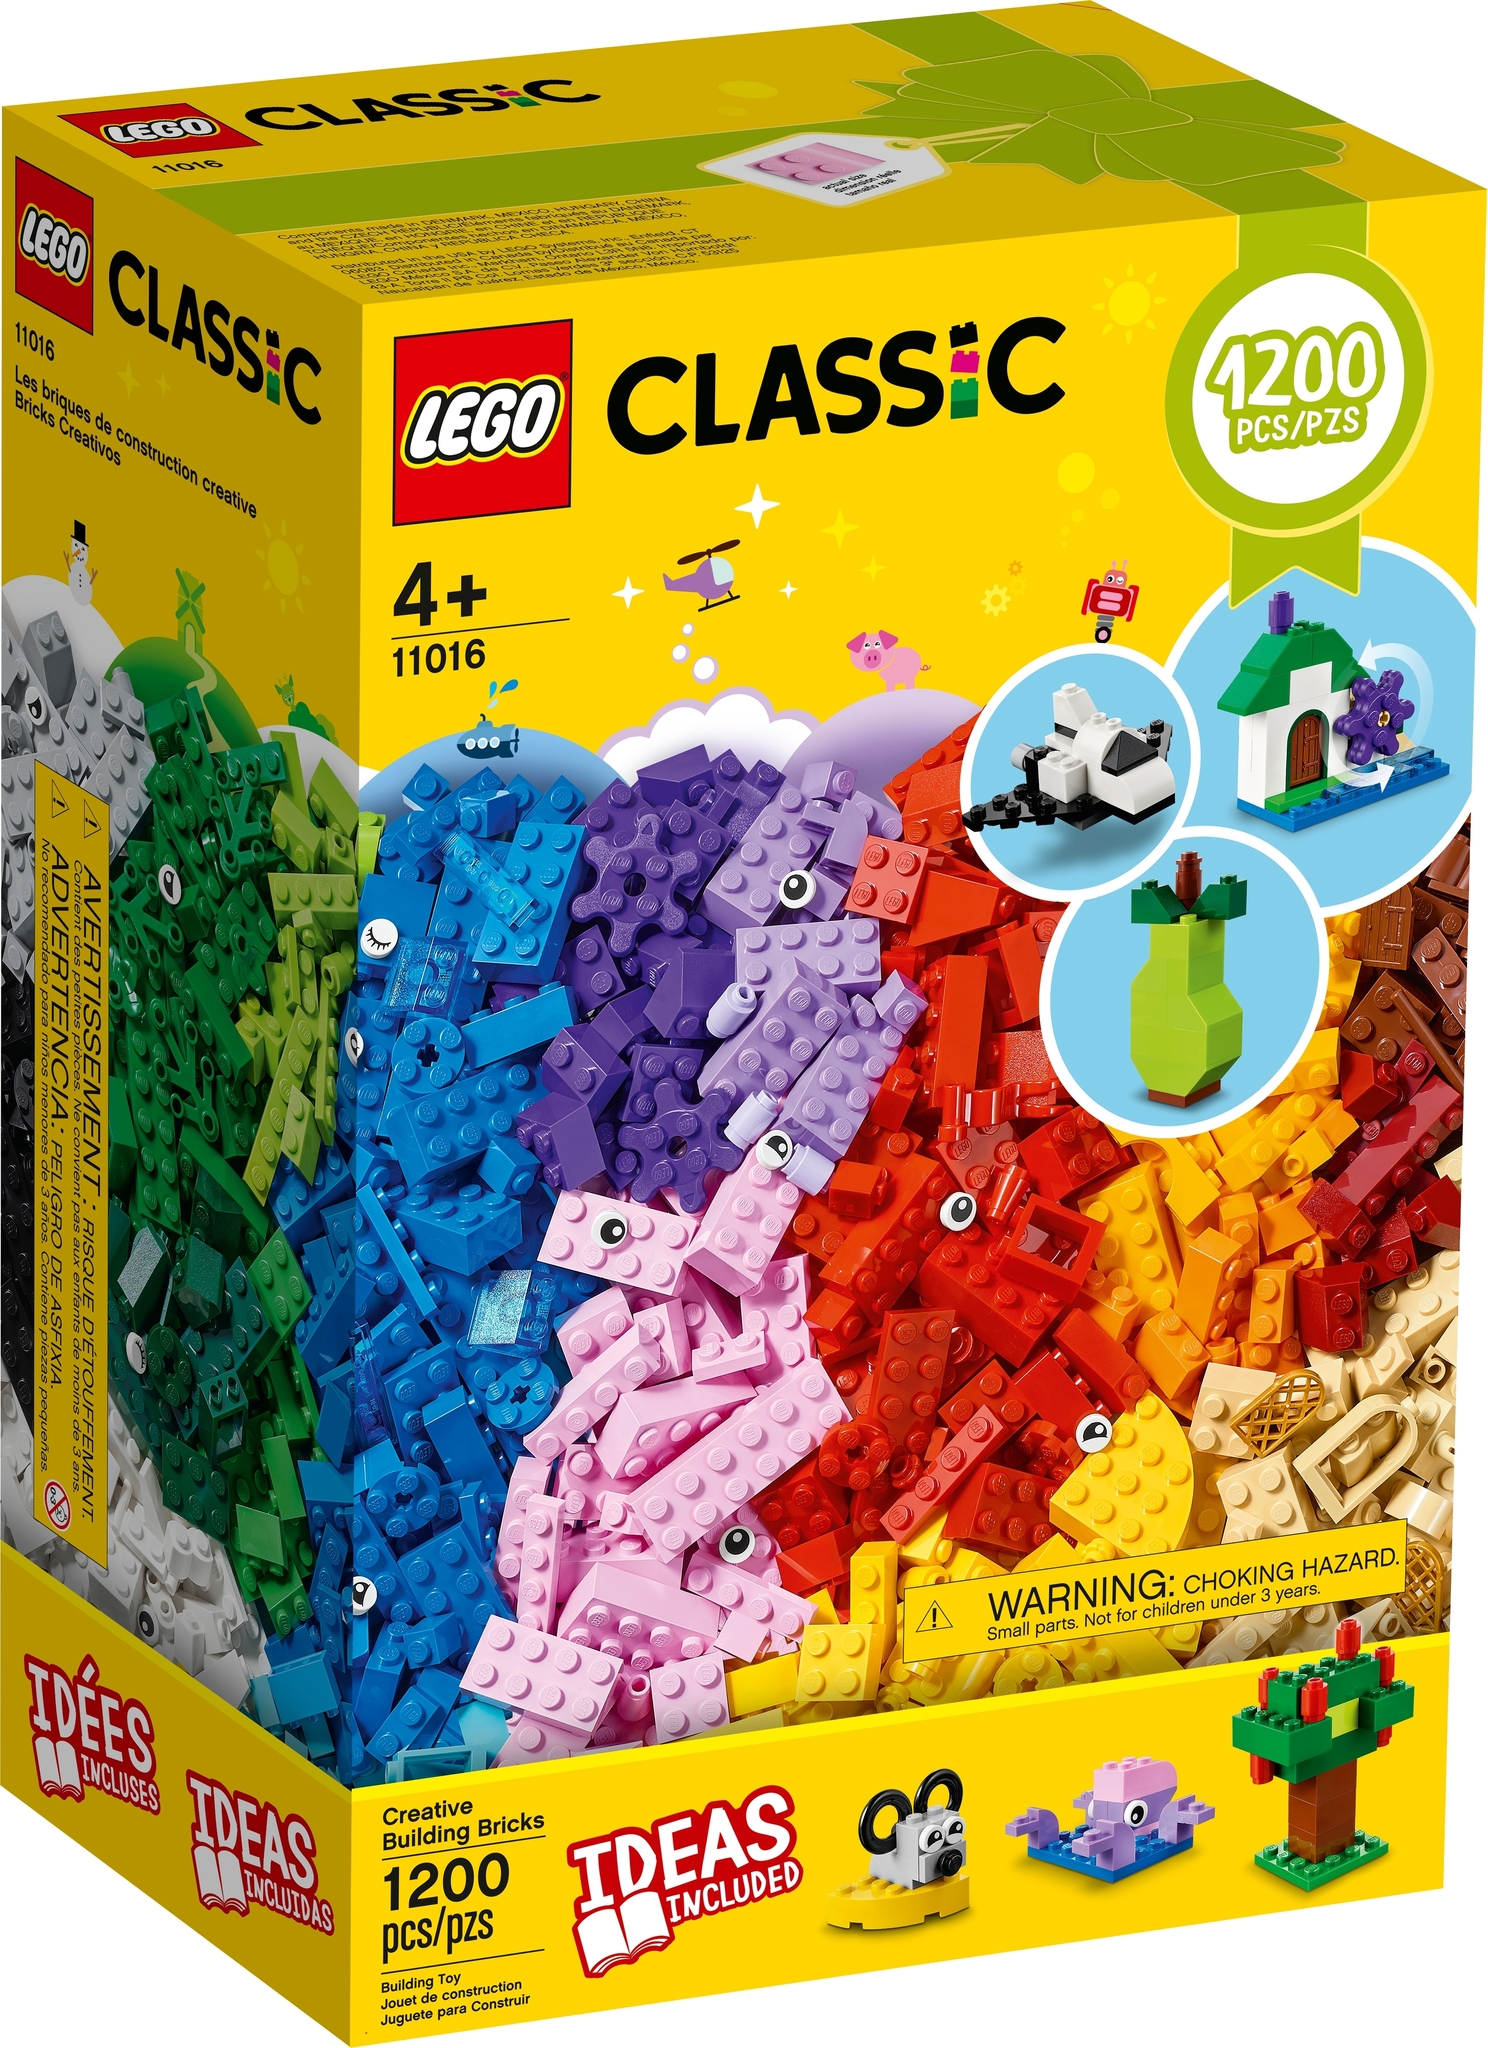 Mattoncini LEGO: origine e storia del gioco divenuto anche complemento  d'arredo